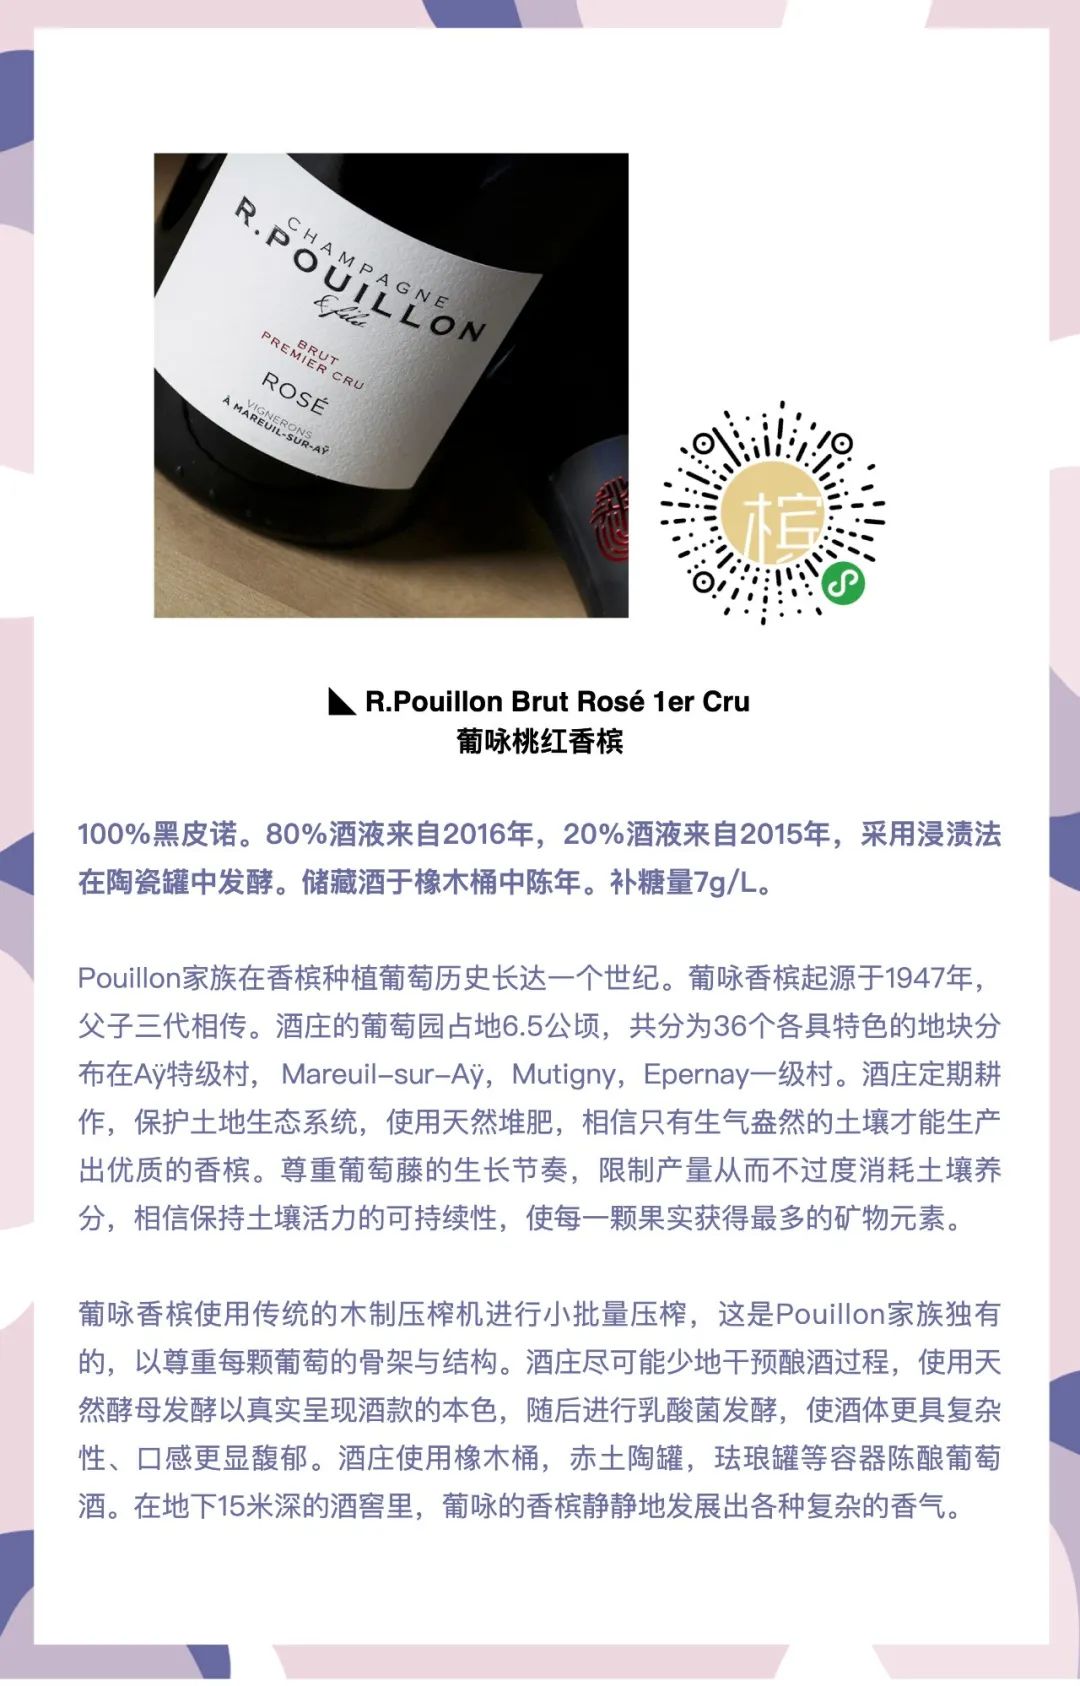 6.11 上海｜盲品冠军Sam的香槟课 “香槟怎么品” ⎡香槟客的夏天⎦